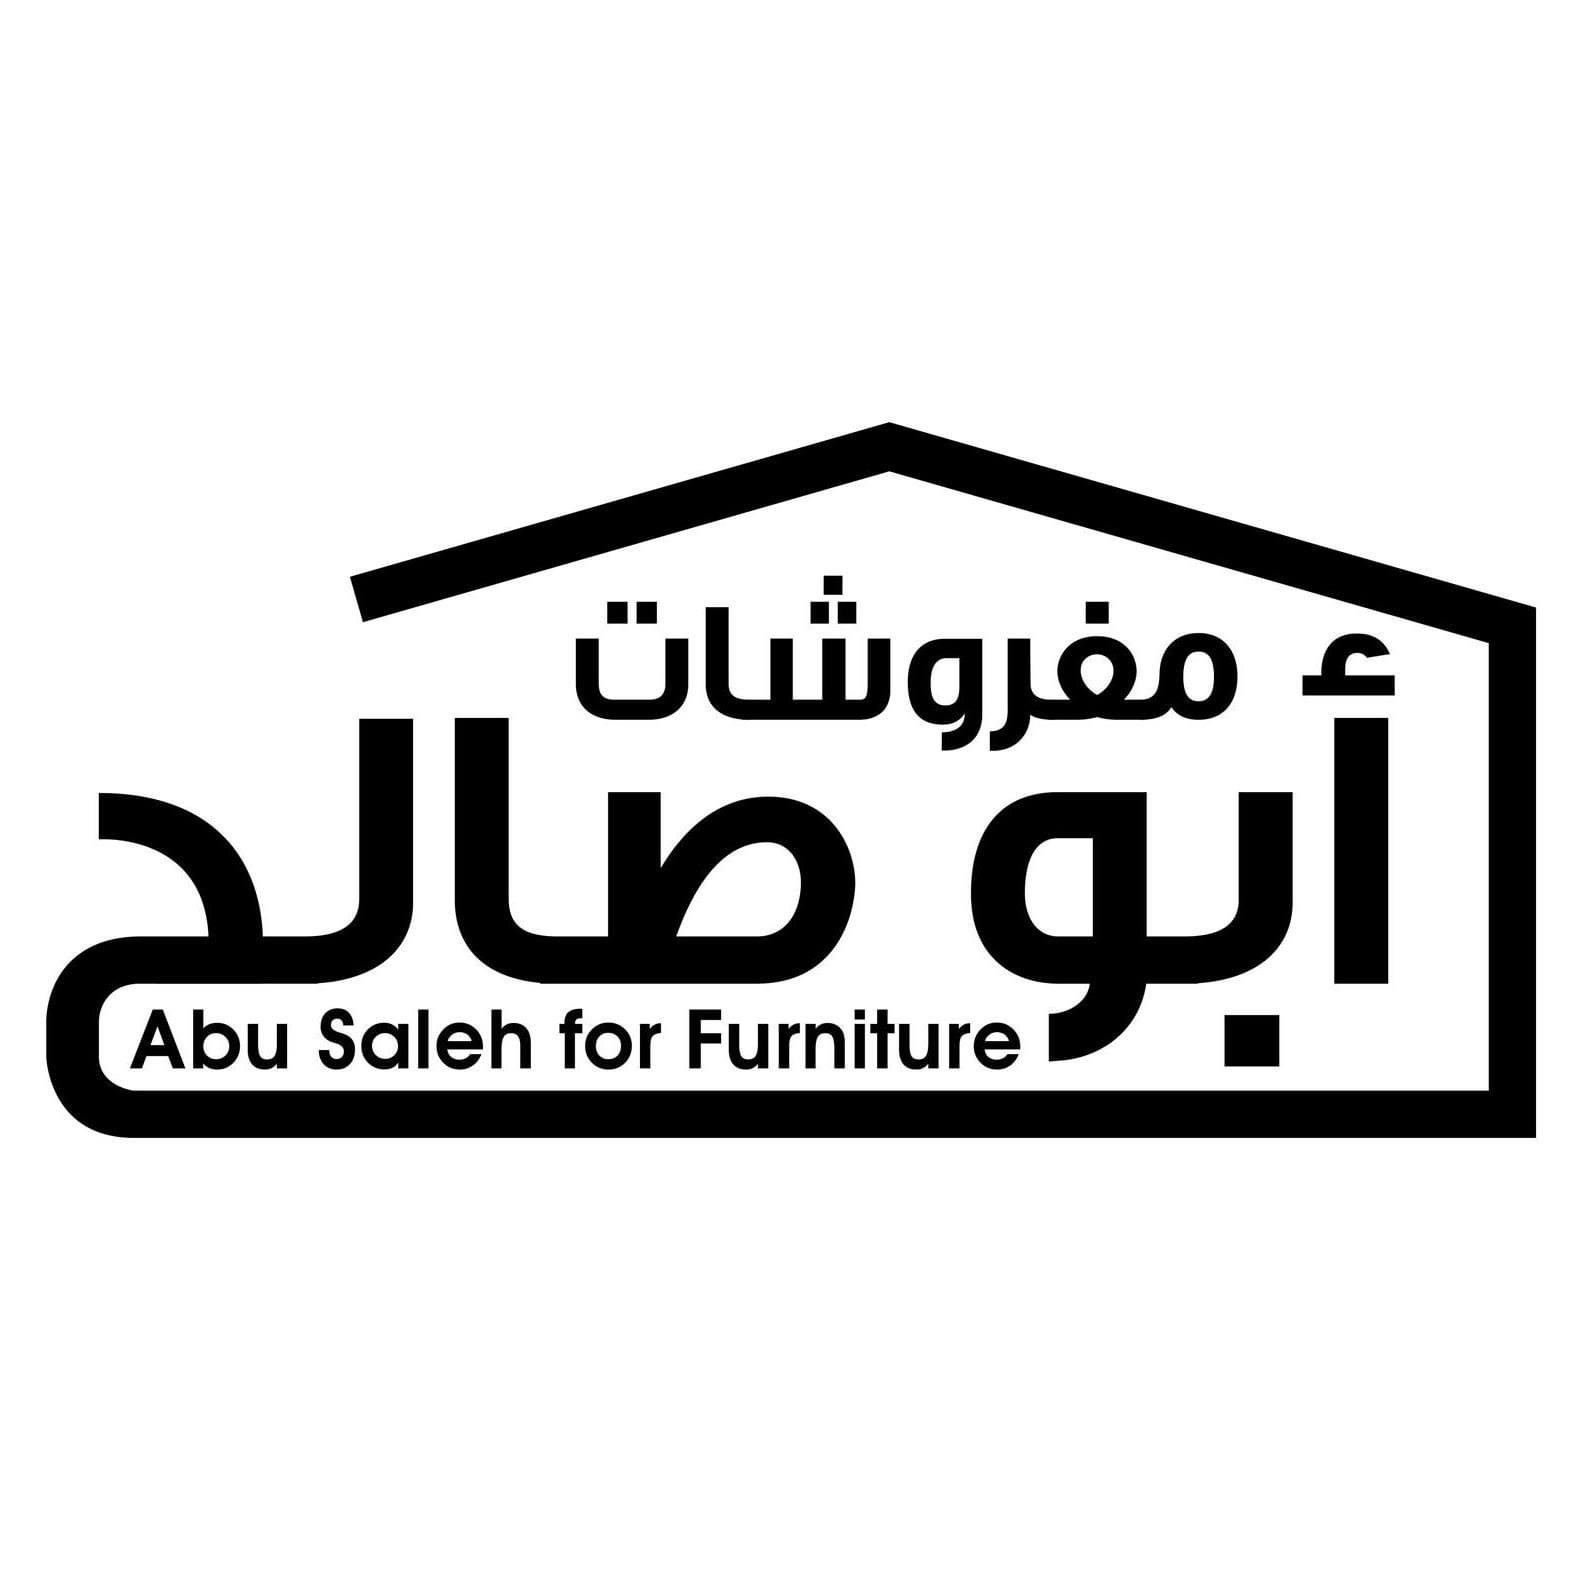 abu saleh furniture